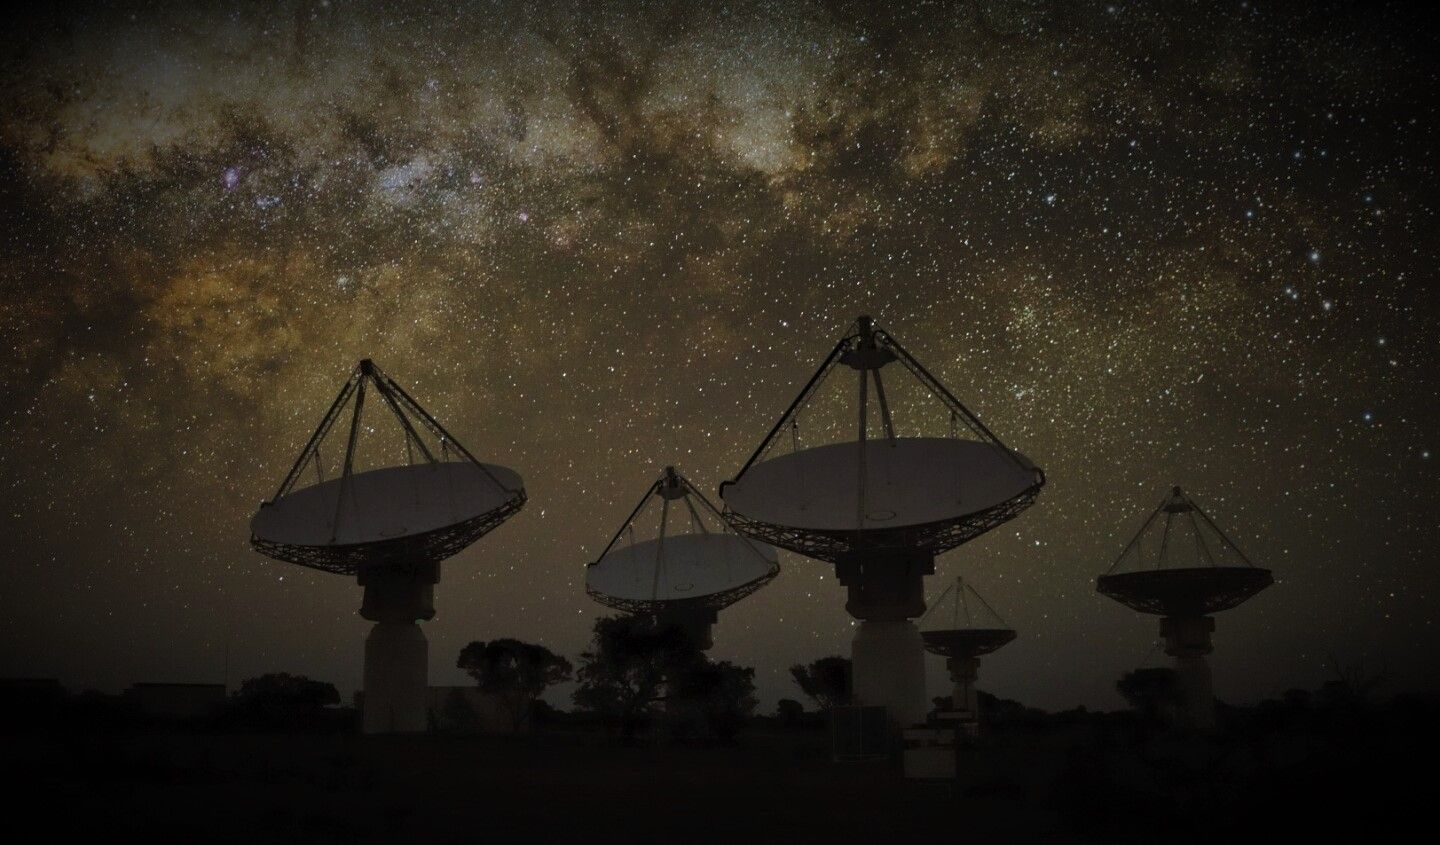 Extrañas señales captadas desde el centro de la Galaxia, astrónomos sorprendidos.